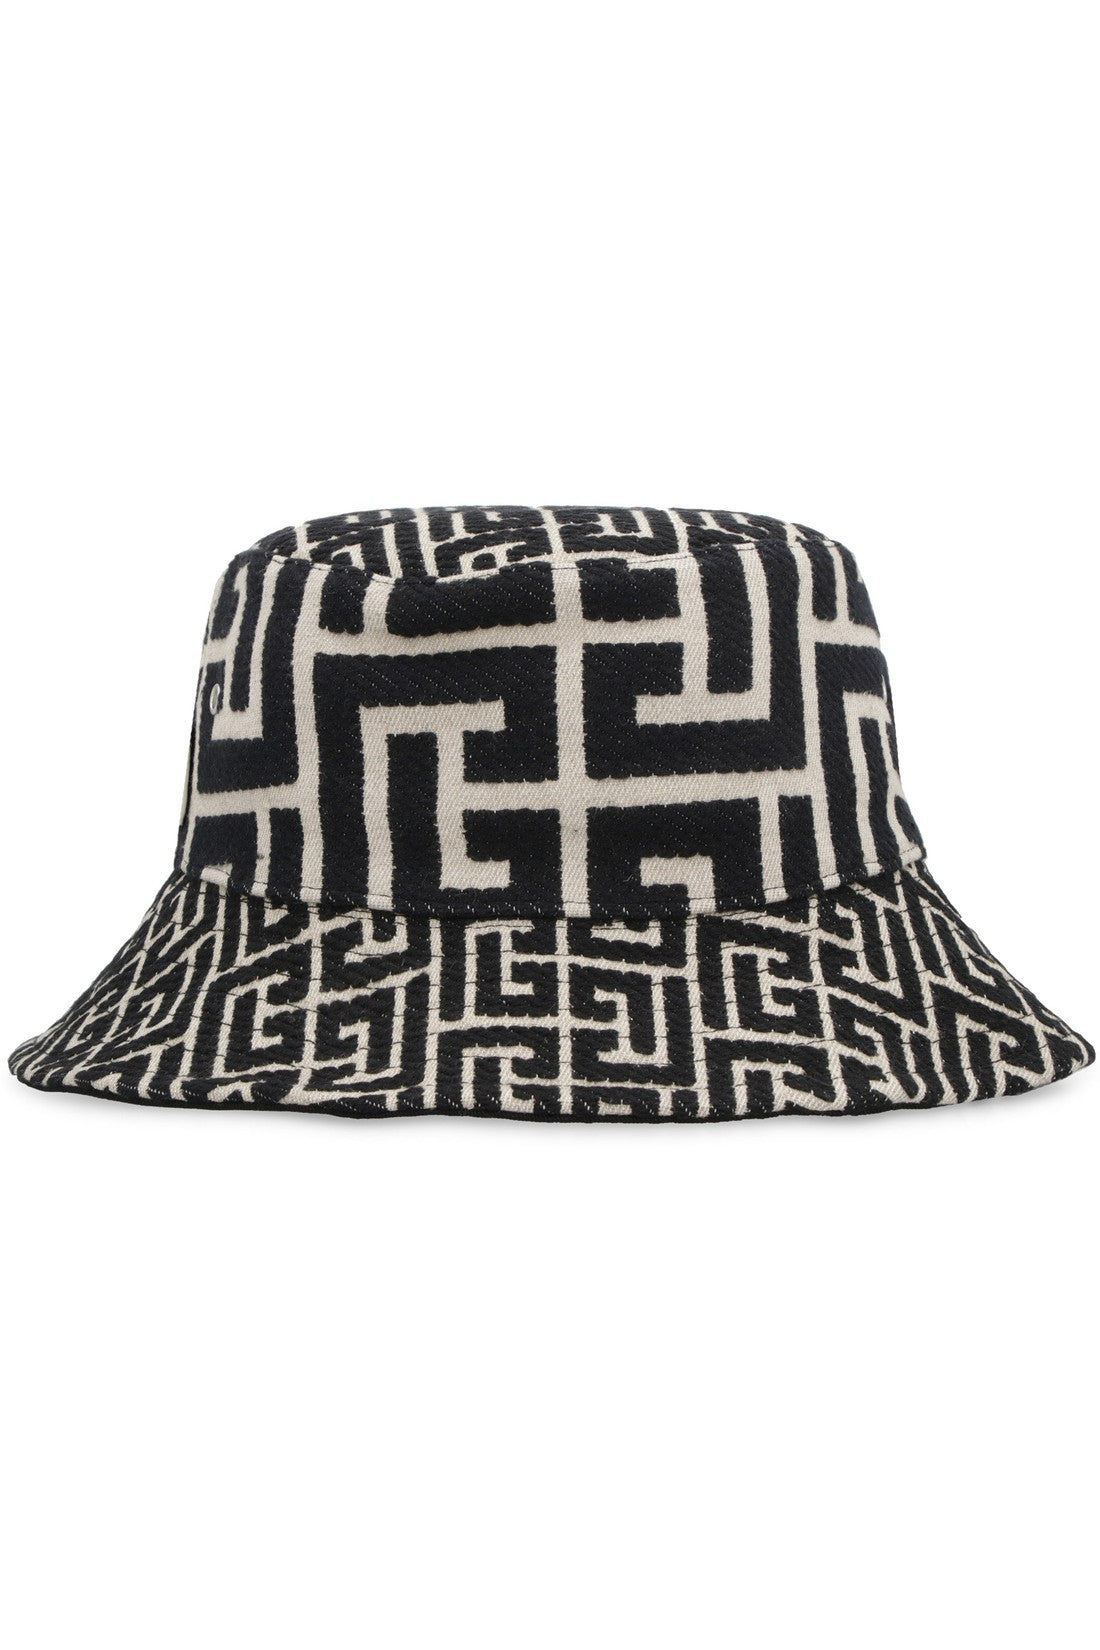 Balmain-OUTLET-SALE-Bucket hat-ARCHIVIST